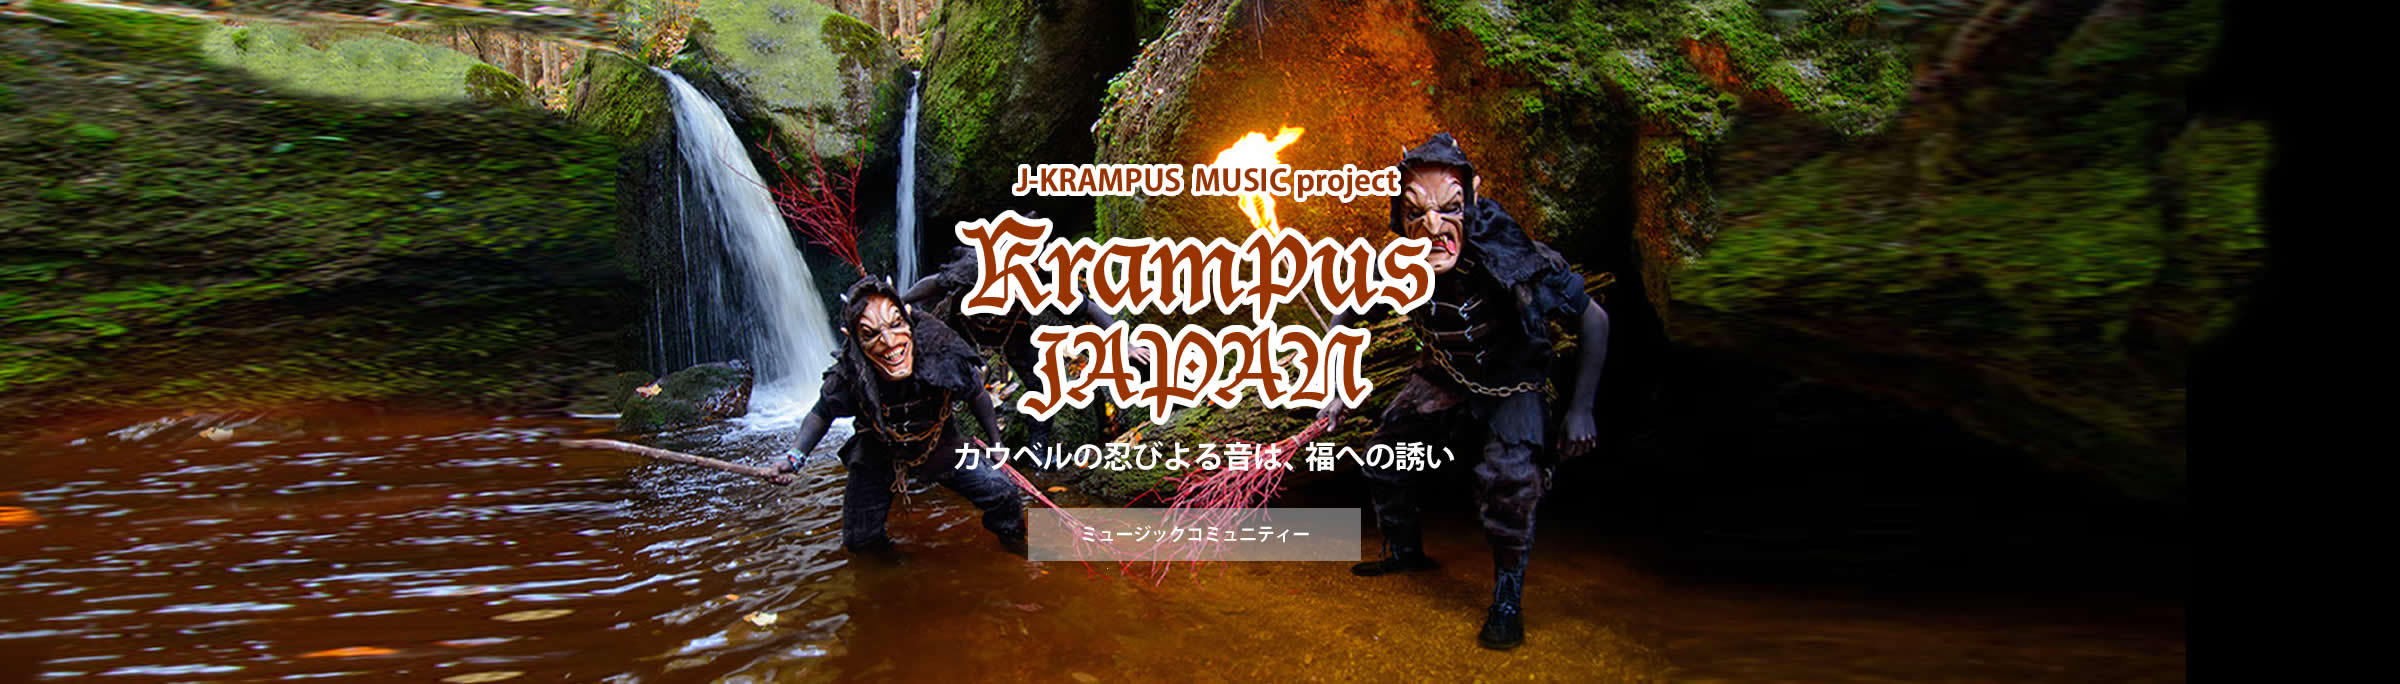 J-KRAMPUS MUSIC project　カウベルの忍びよる音は、福への誘い　ミュージックコミュニティー